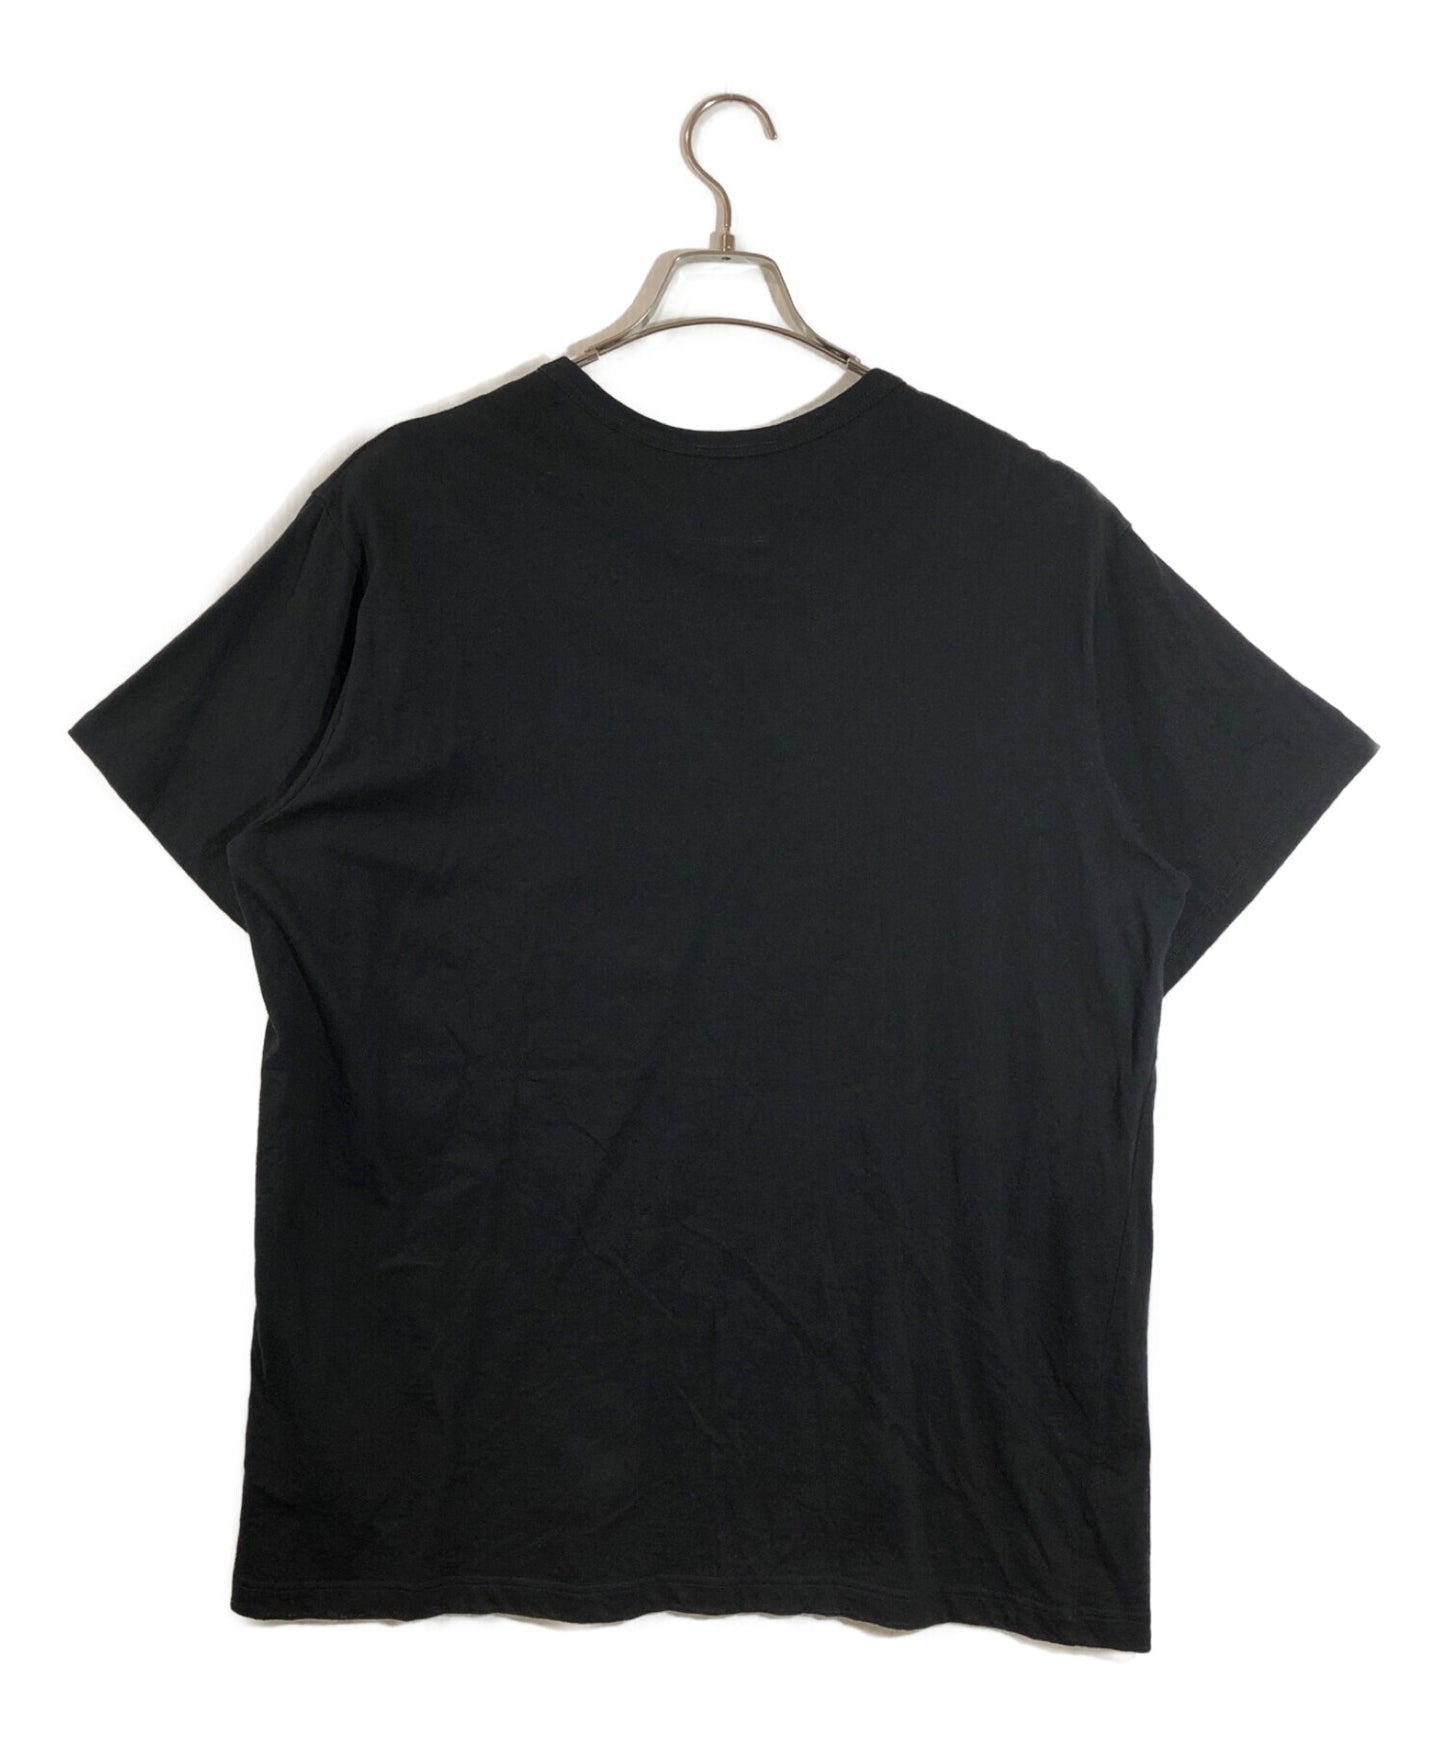 블랙 스캔들 yohji yamamoto 우리는 티셔츠 hg-t20-079에 있습니다